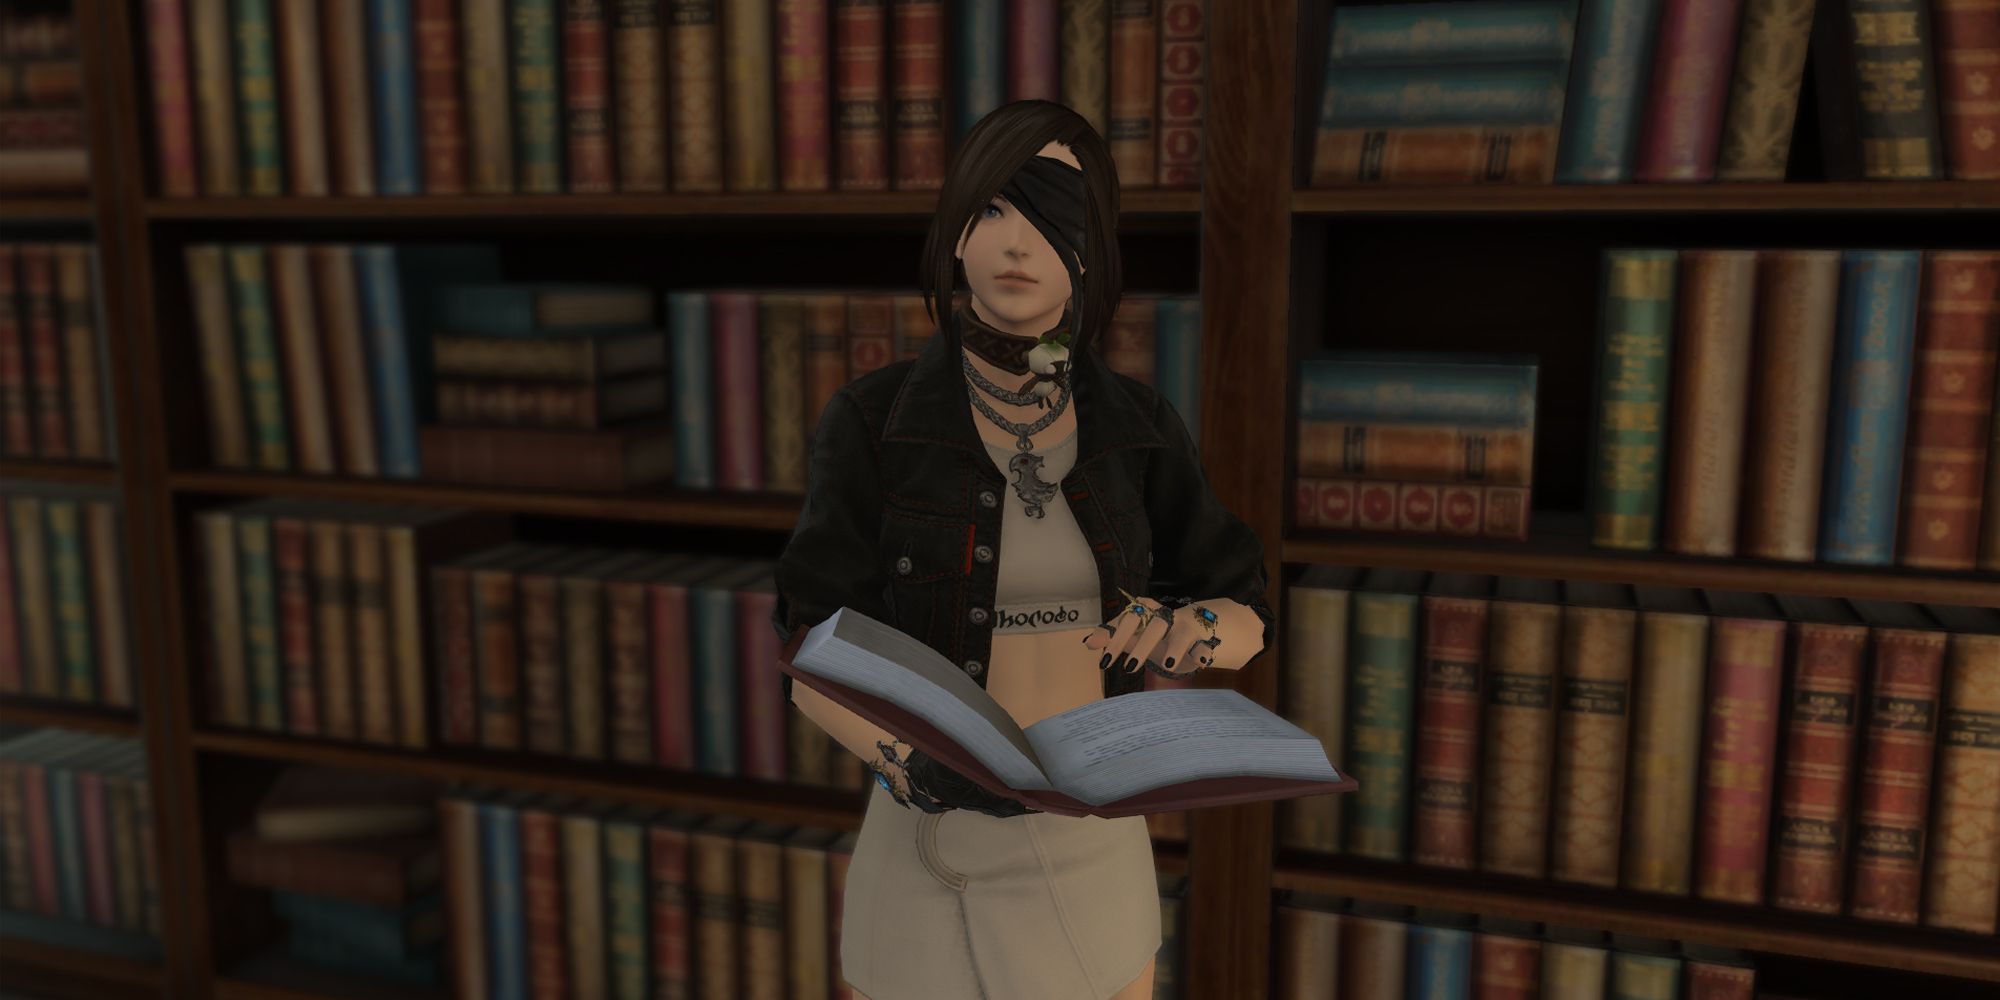 Ein Final Fantasy 14-Spieler liest ein Buch, während er vor einem Bücherregal steht.